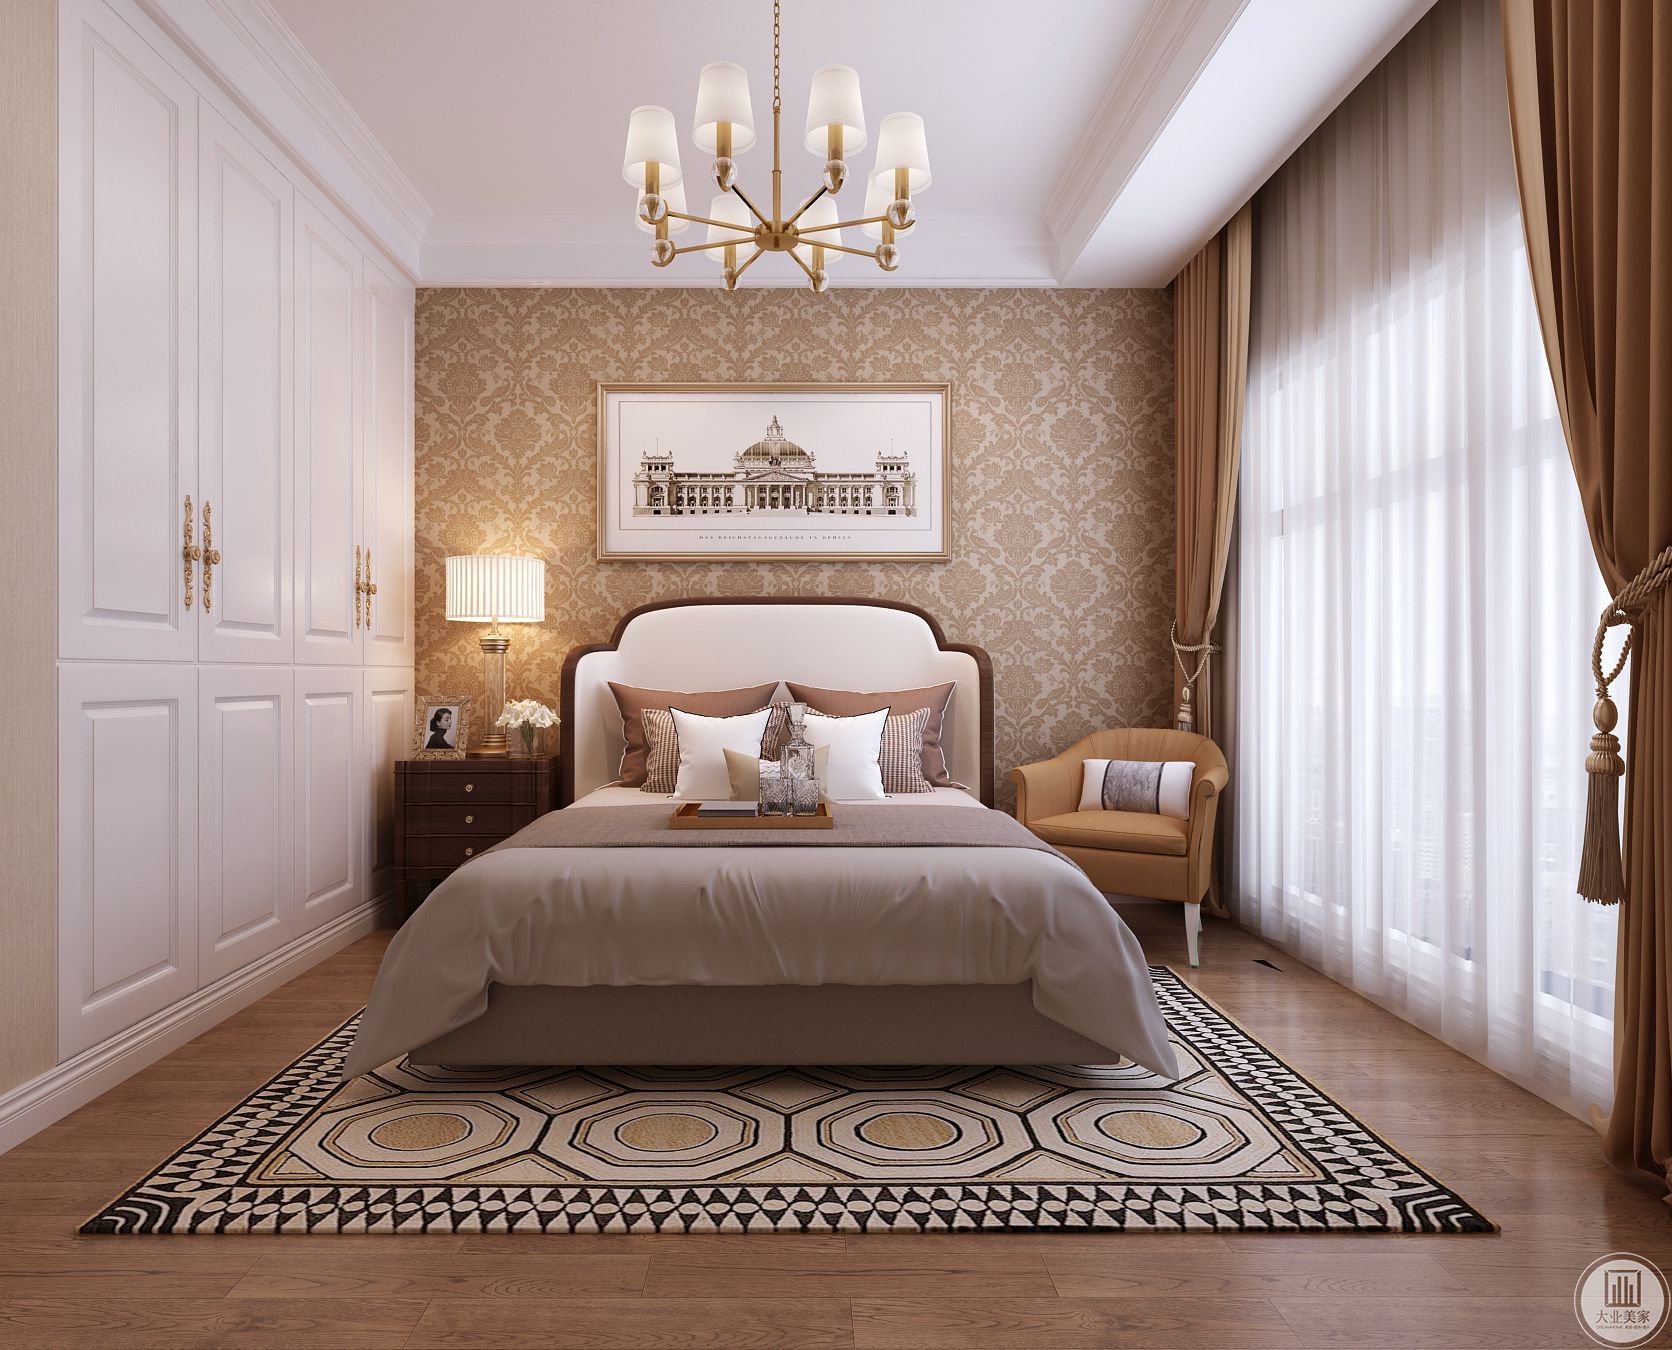 卧室注重对舒适的私人空间氛围的营造。以咖啡色的花纹护墙板搭配素白软包为背景墙，简单大气而舒适。 设计师采用浅白色的床品搭配花纹地毯为整个卧室增添一丝浪漫情趣。